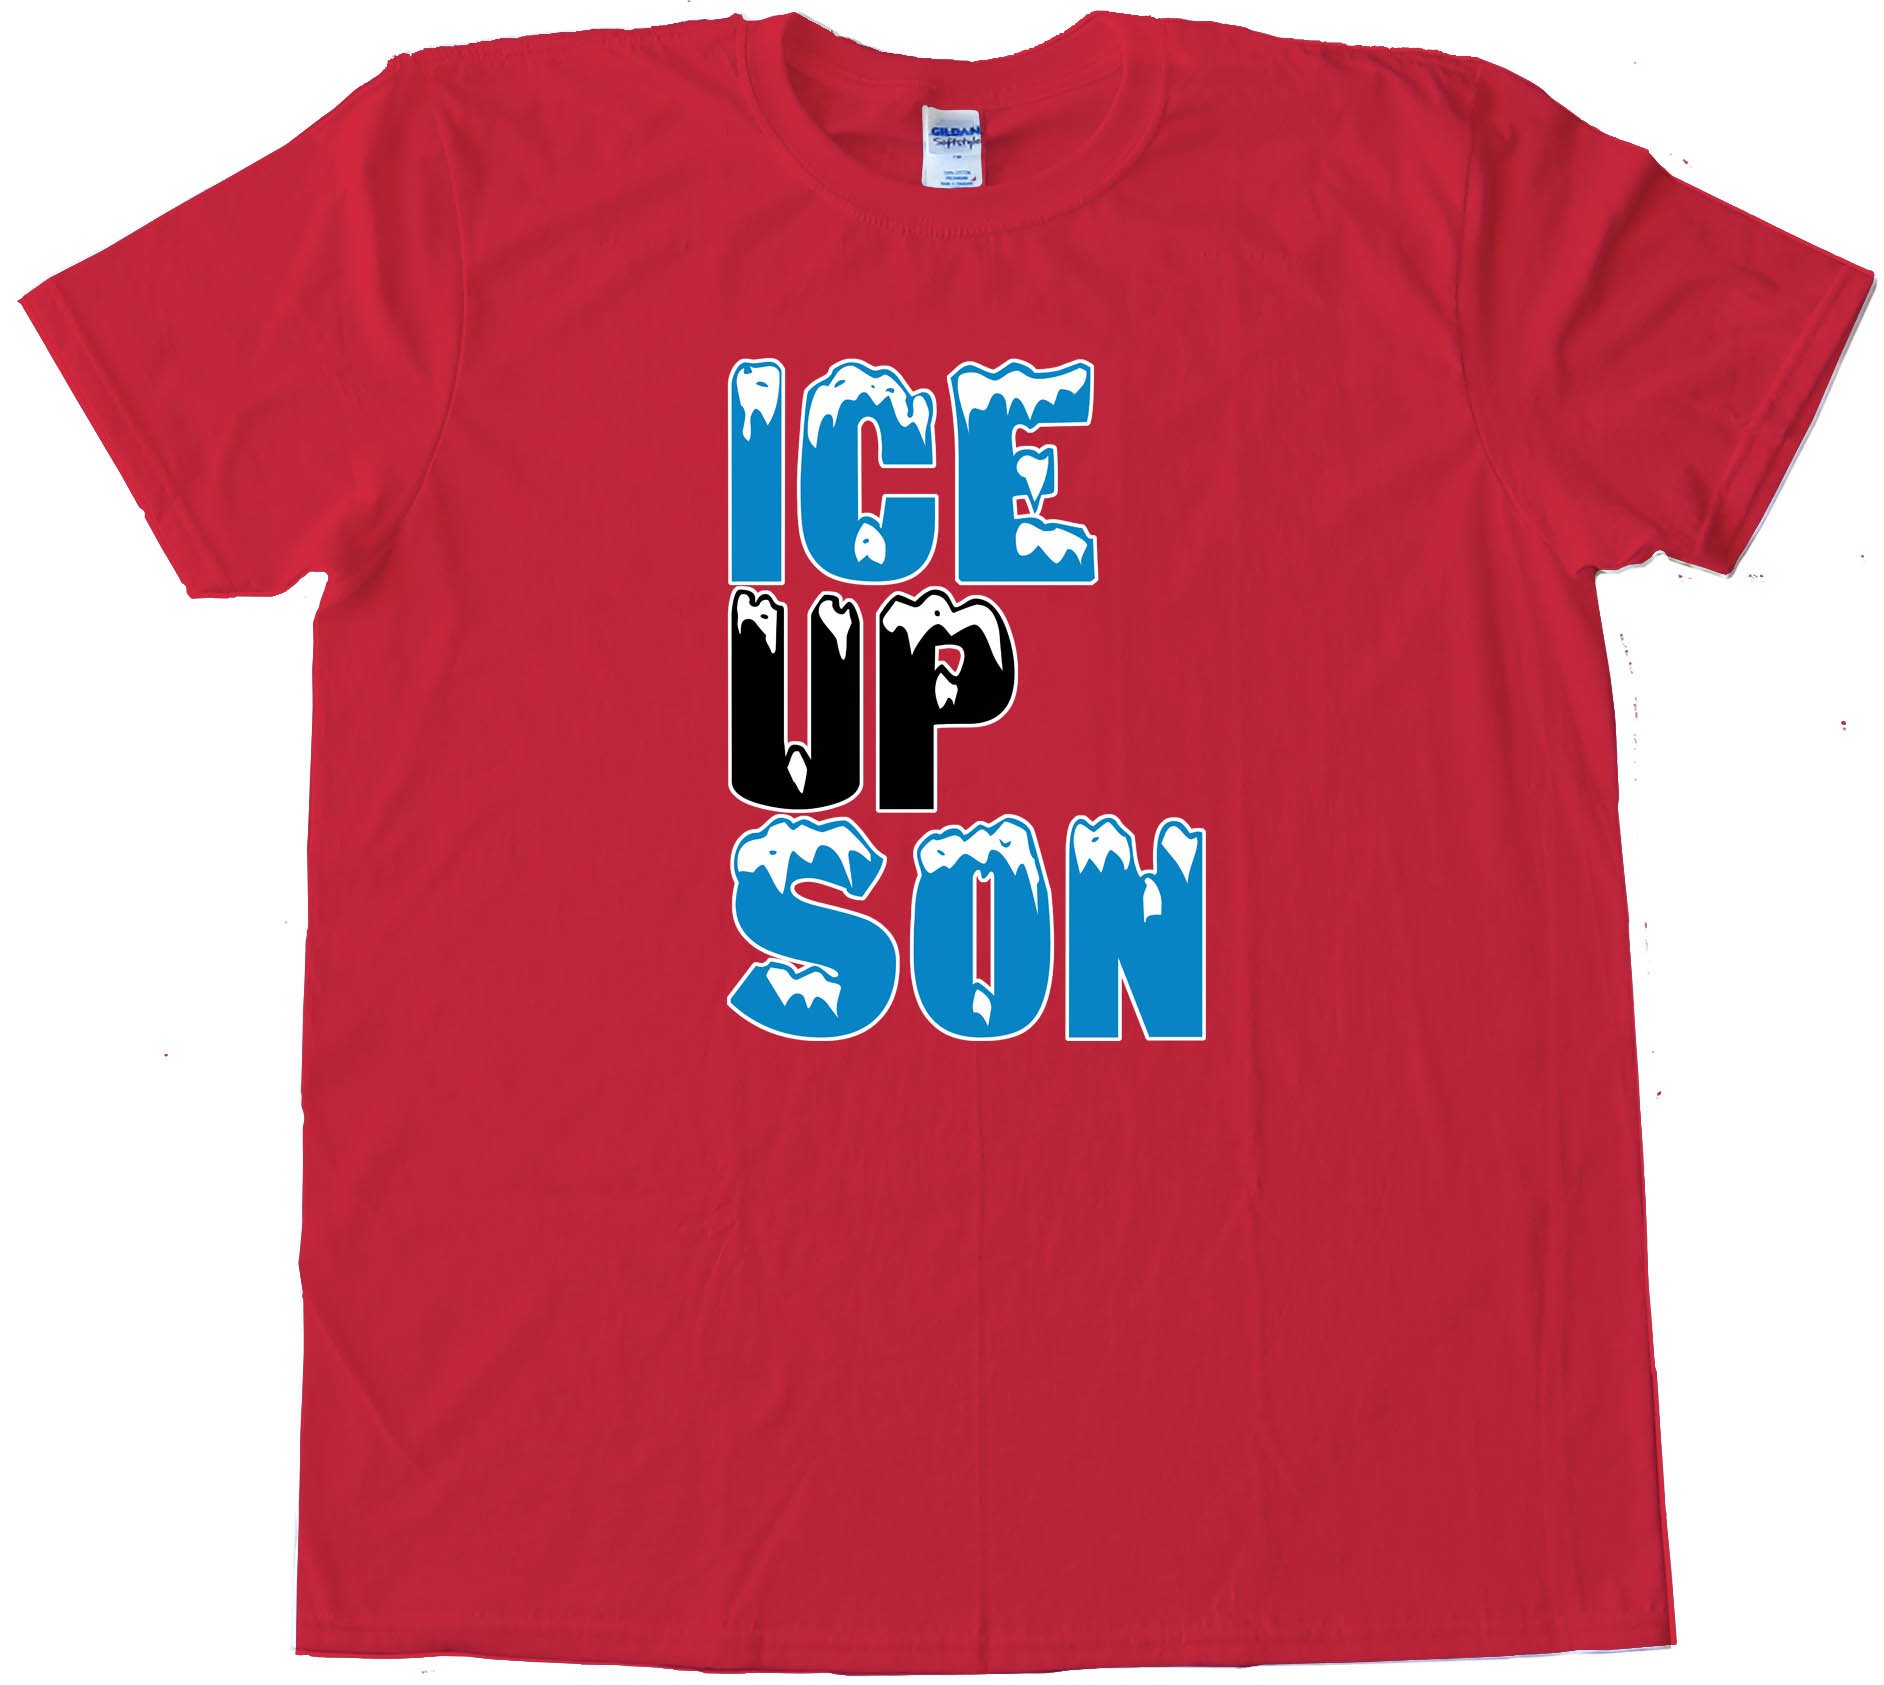 Ice Up Son Steve Smith - Tee Shirt